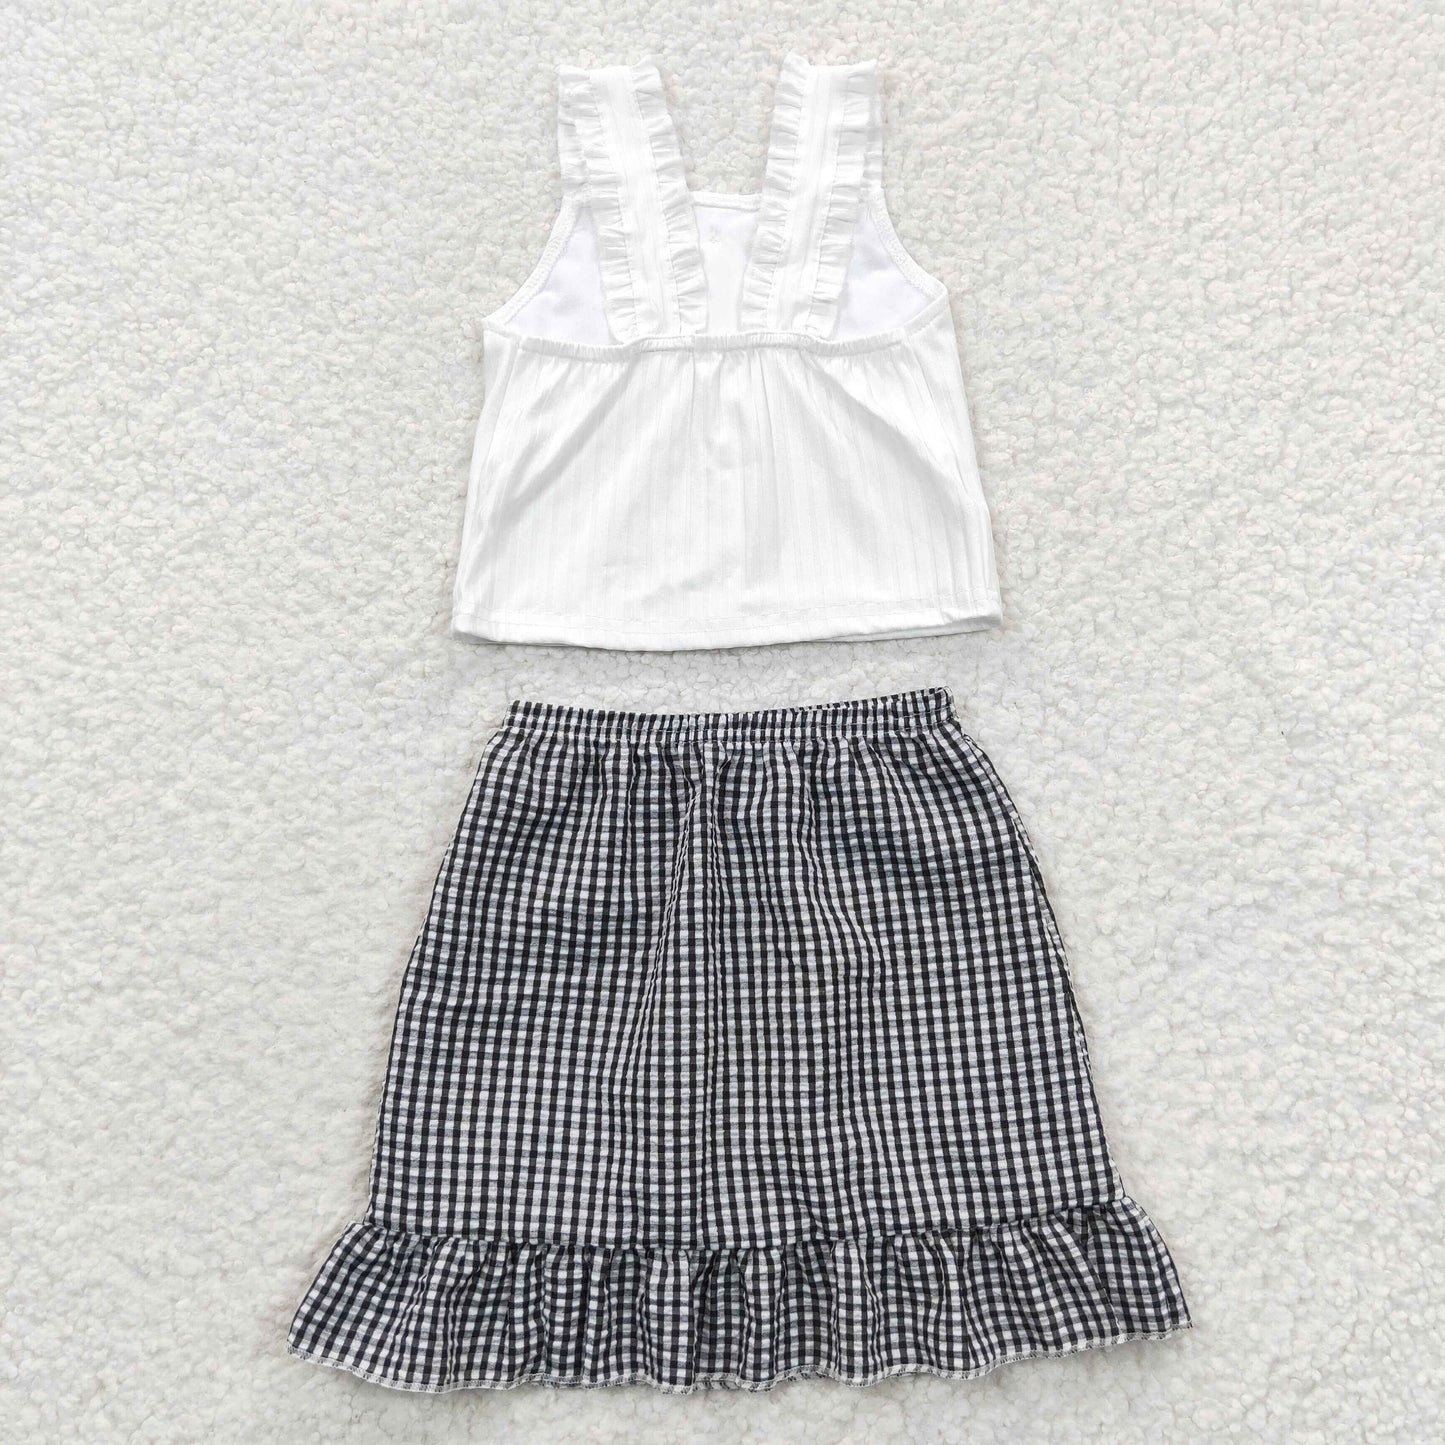 GSD0262 Girls White Vest Plaid Skirt Set